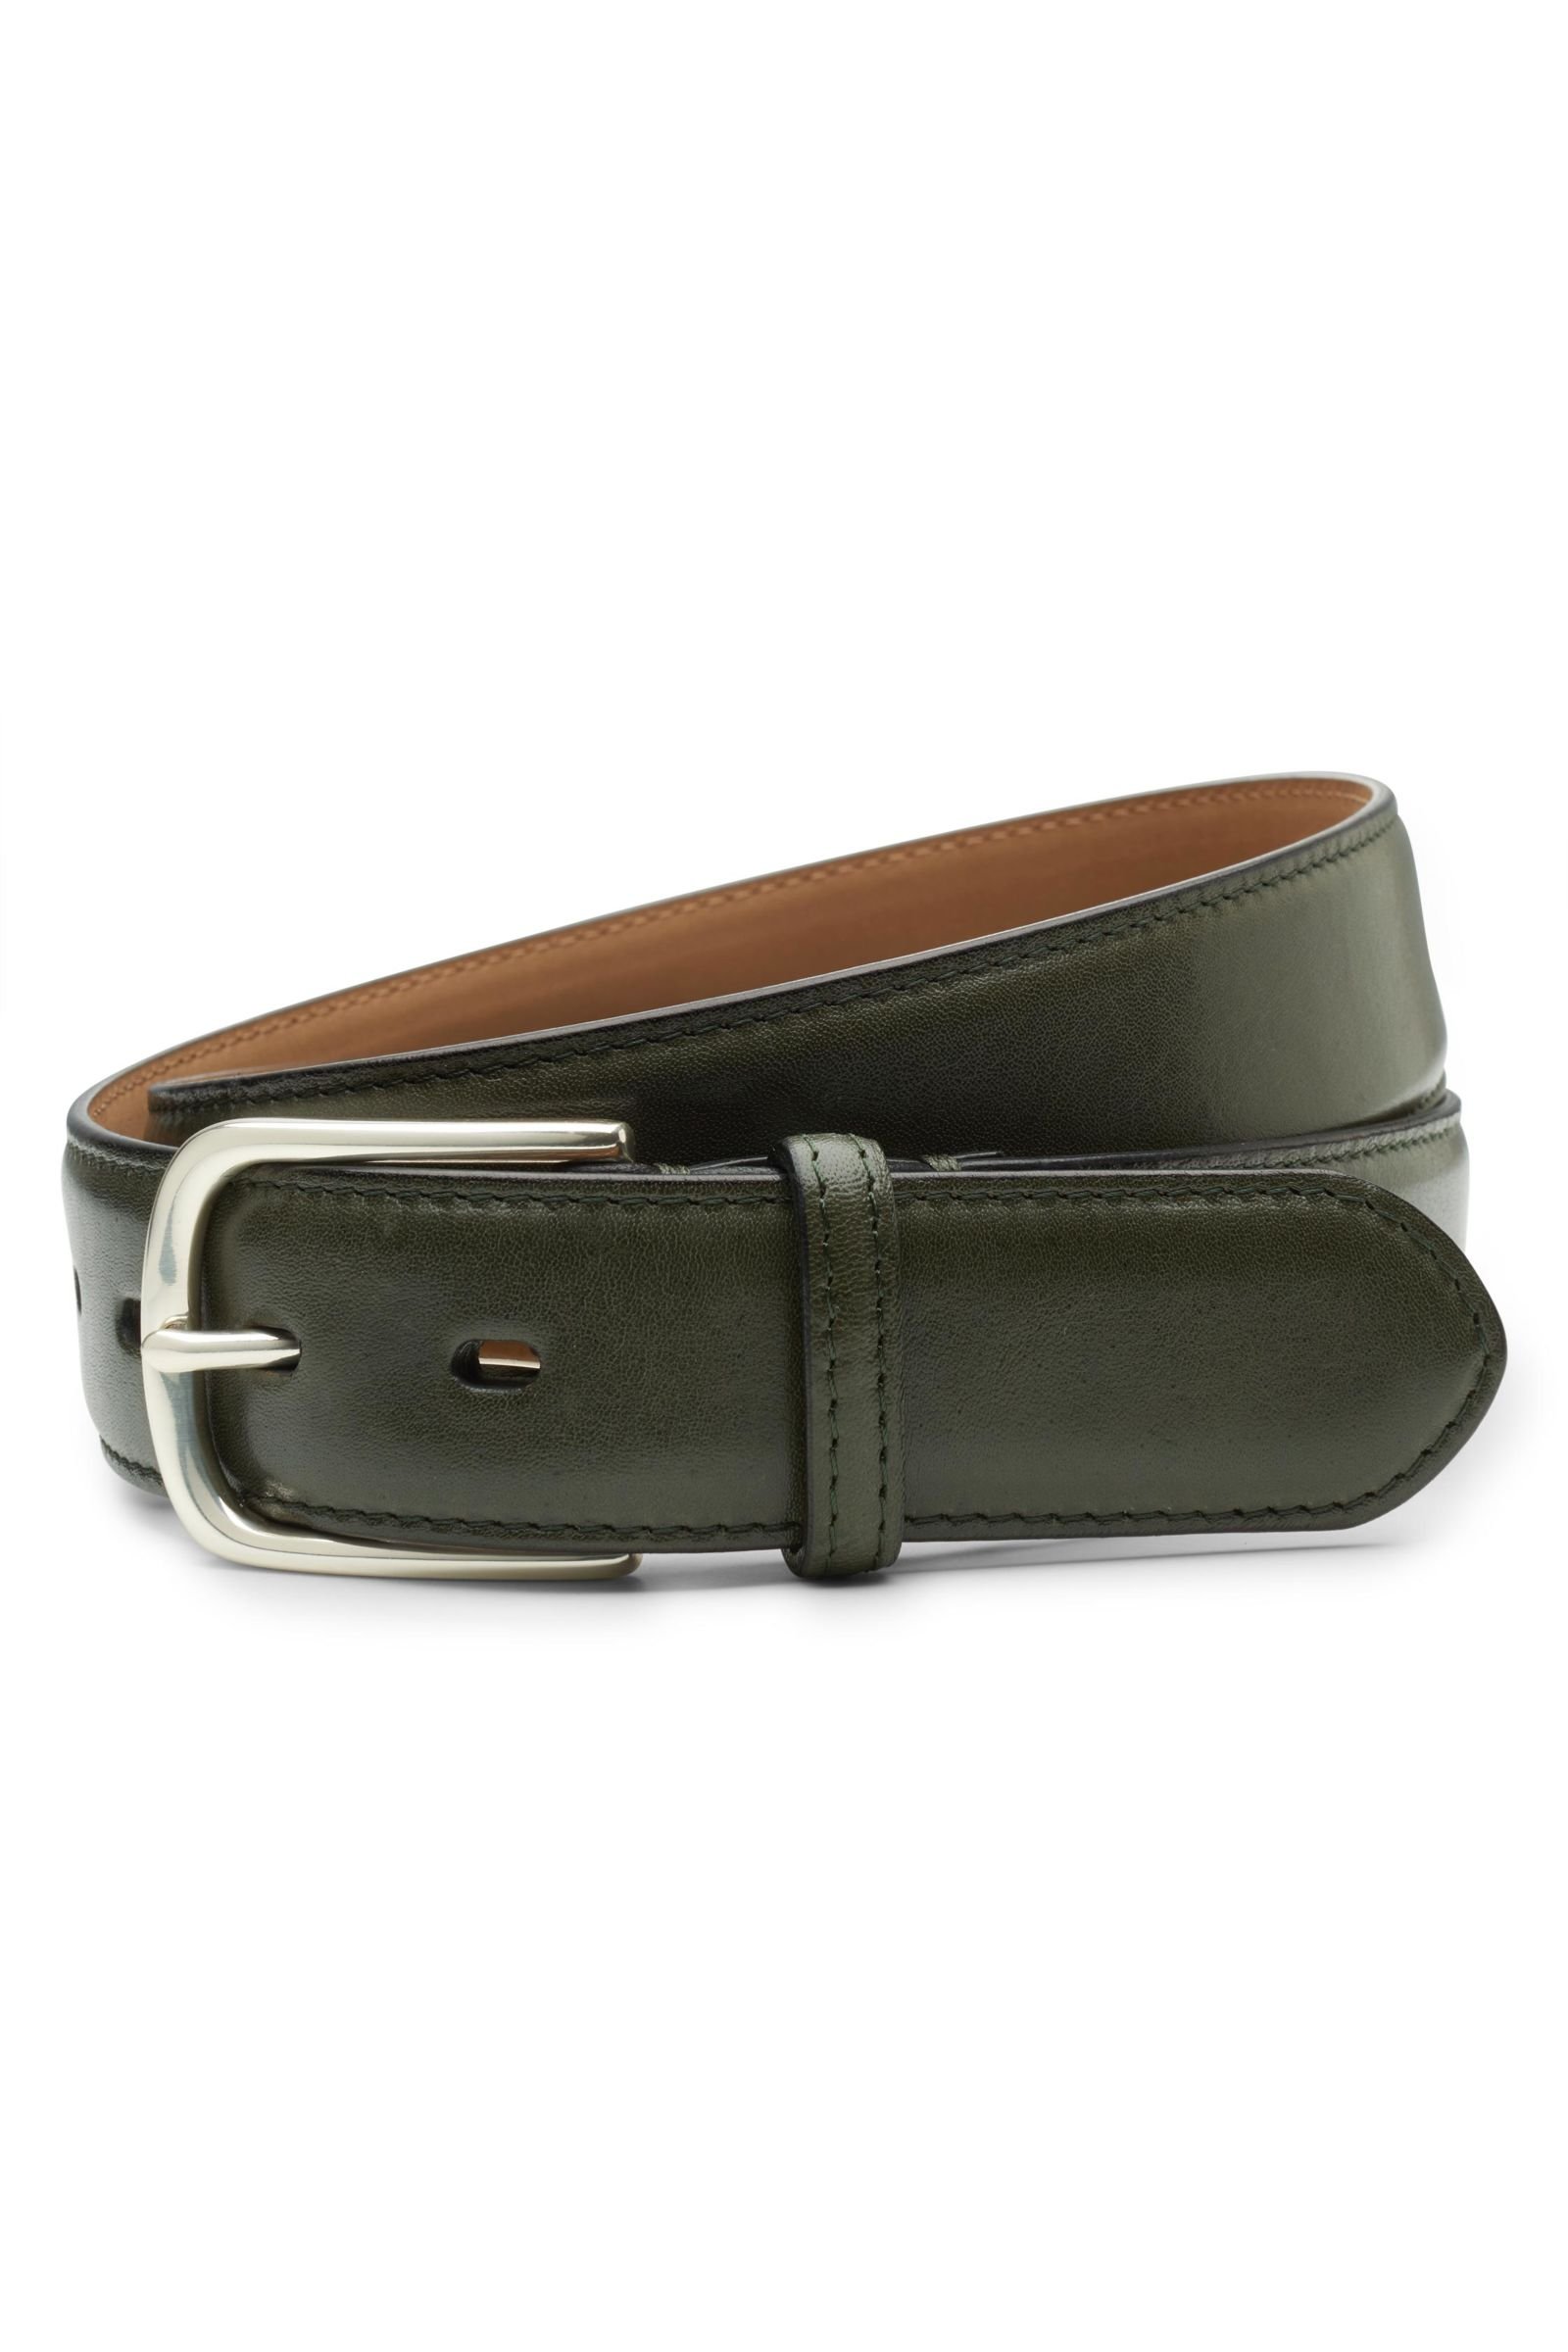 Kangaroo leather belt olive